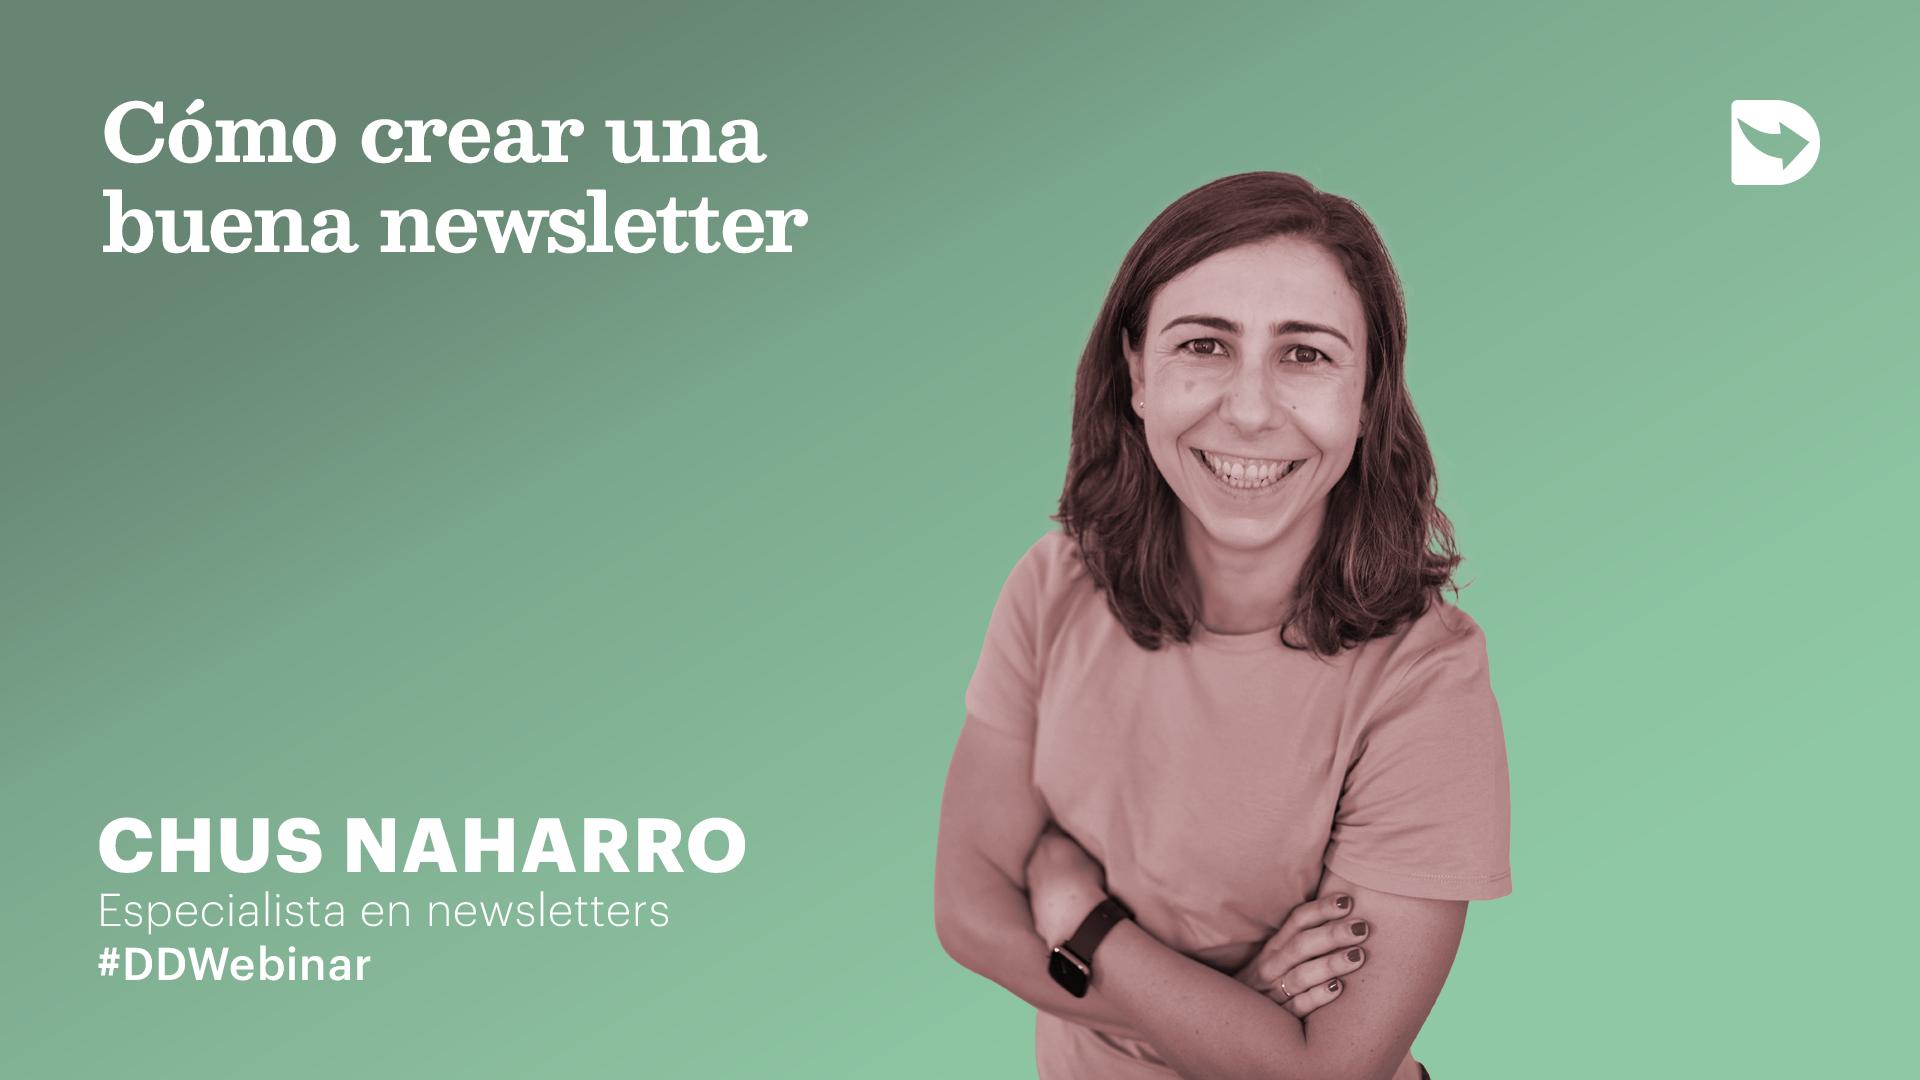 DDWebinar Cómo crear una buena newsletter con Chus Naharro